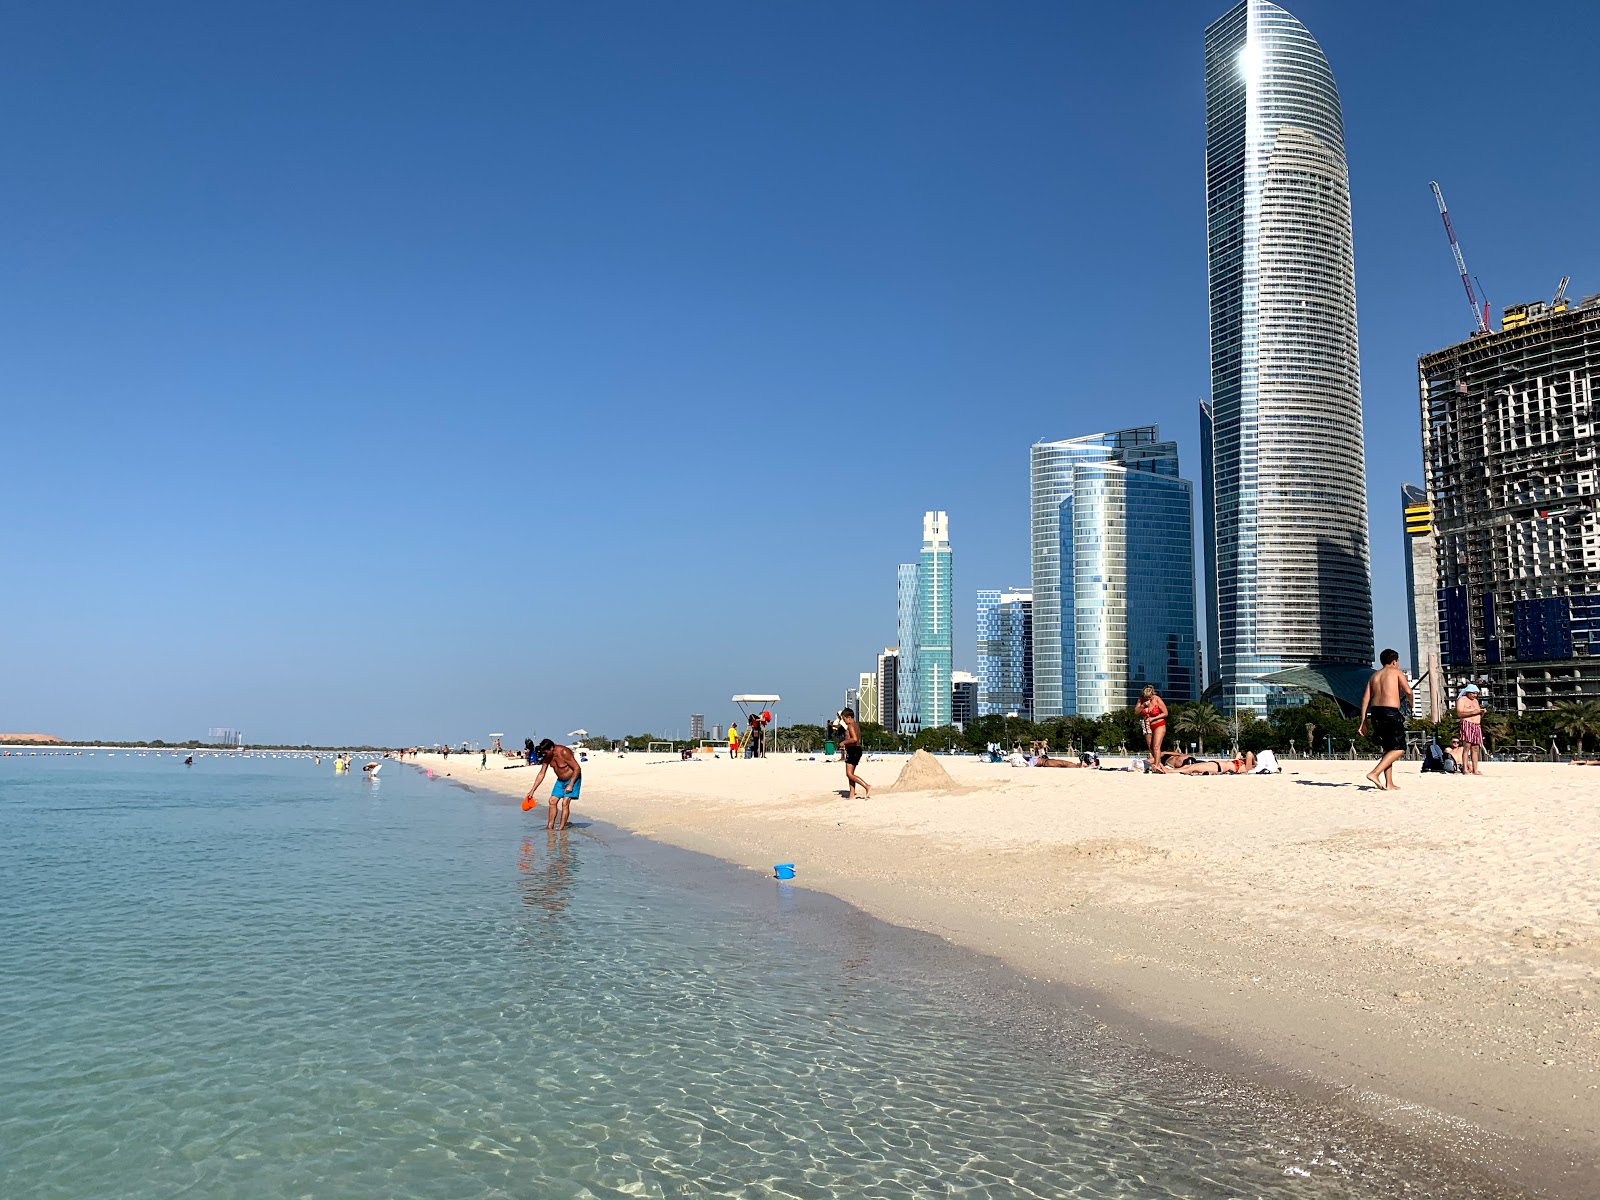 Zdjęcie Abu Dhabi beach z powierzchnią biały drobny piasek